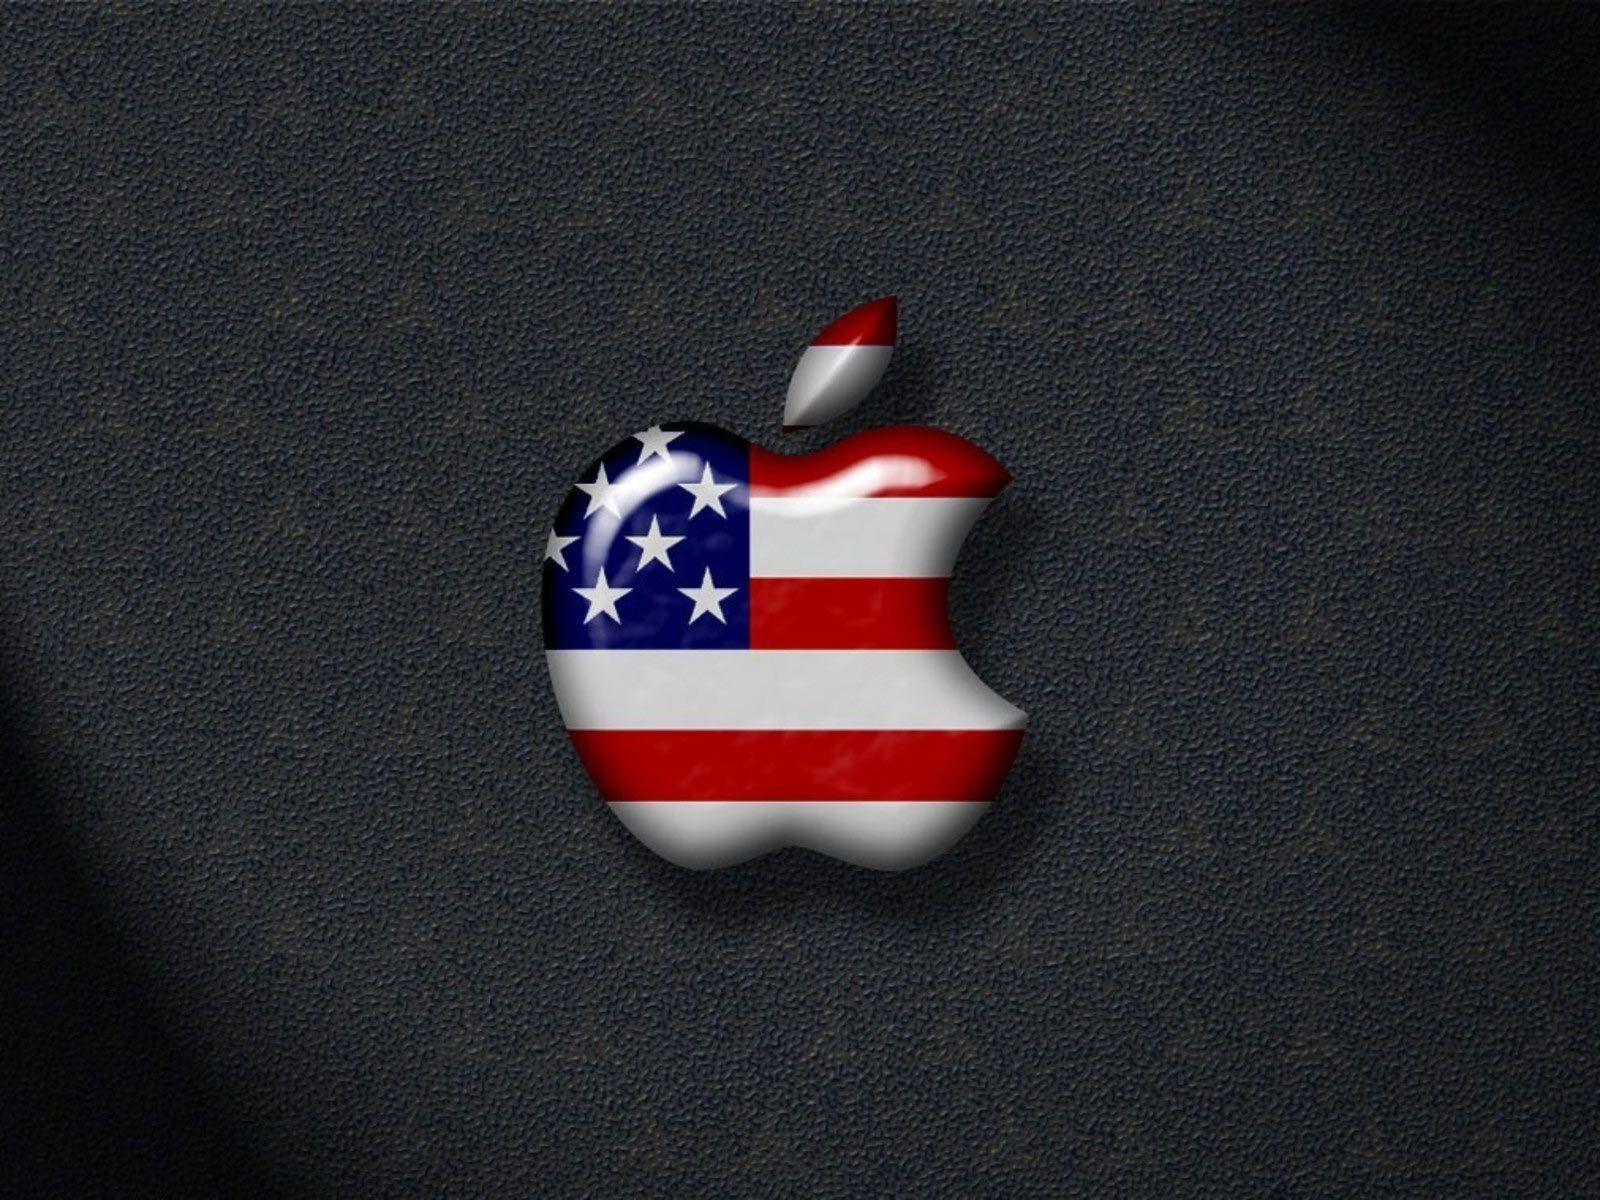 Desktop Wallpaper · Gallery · Computers · USA apple desktop